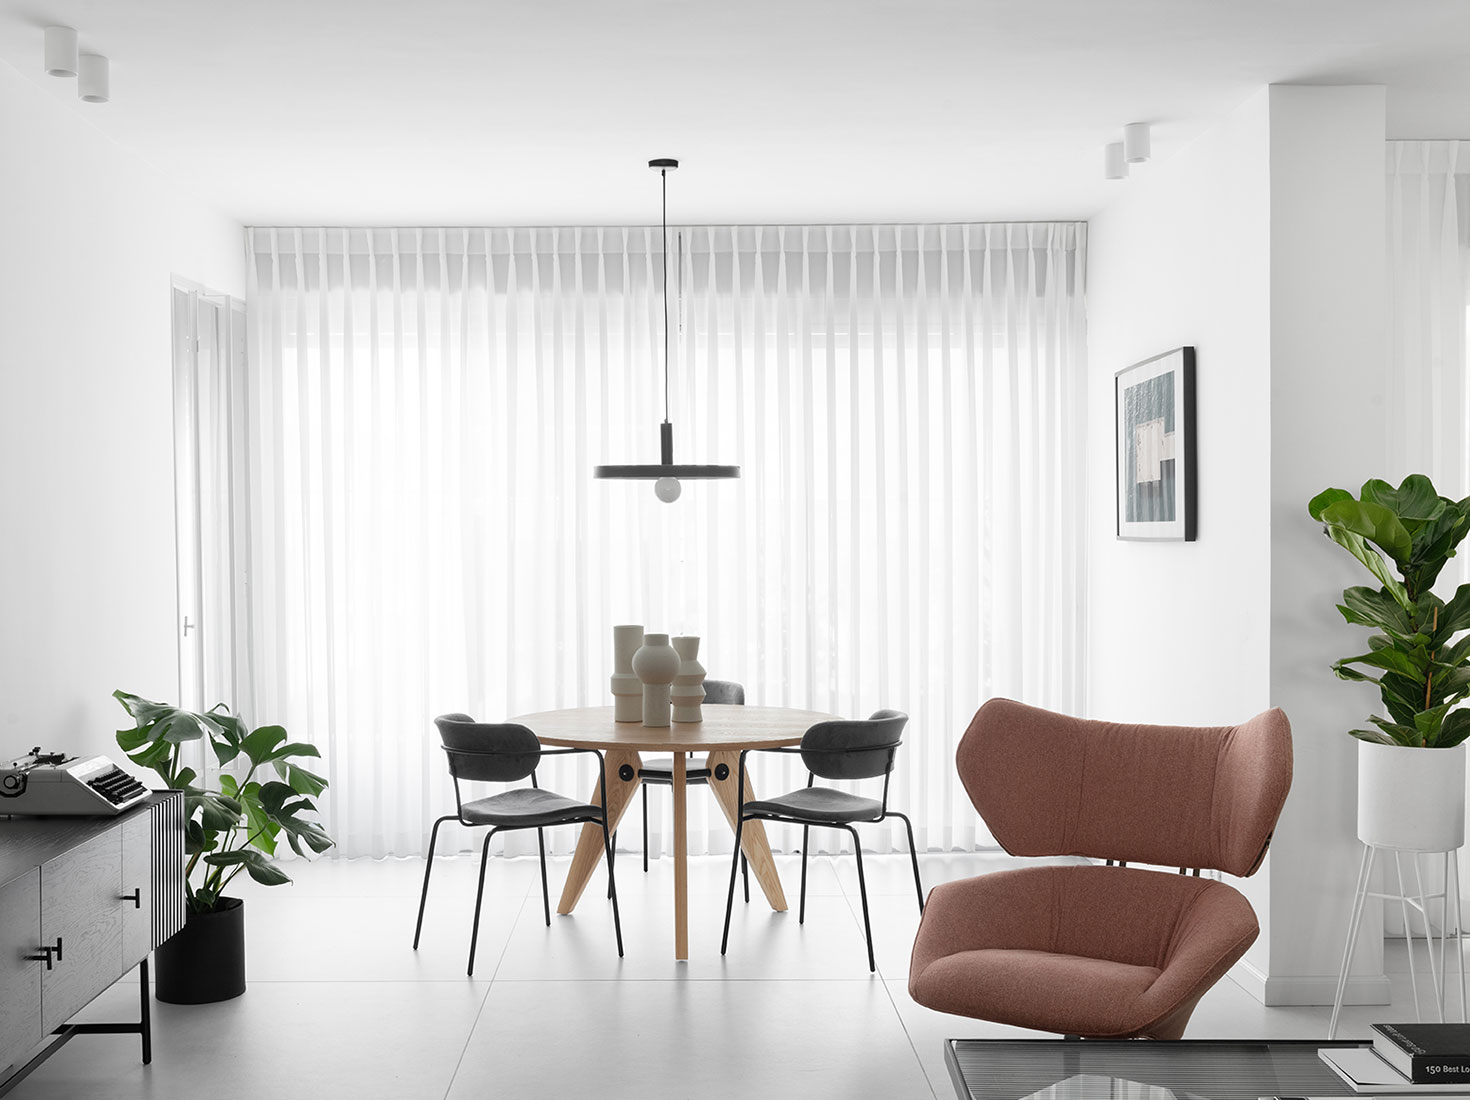 Studio ETN,130㎡,以色列,公寓設計案例,白色+原木色,北歐風格,國外公寓設計,公寓設計方案